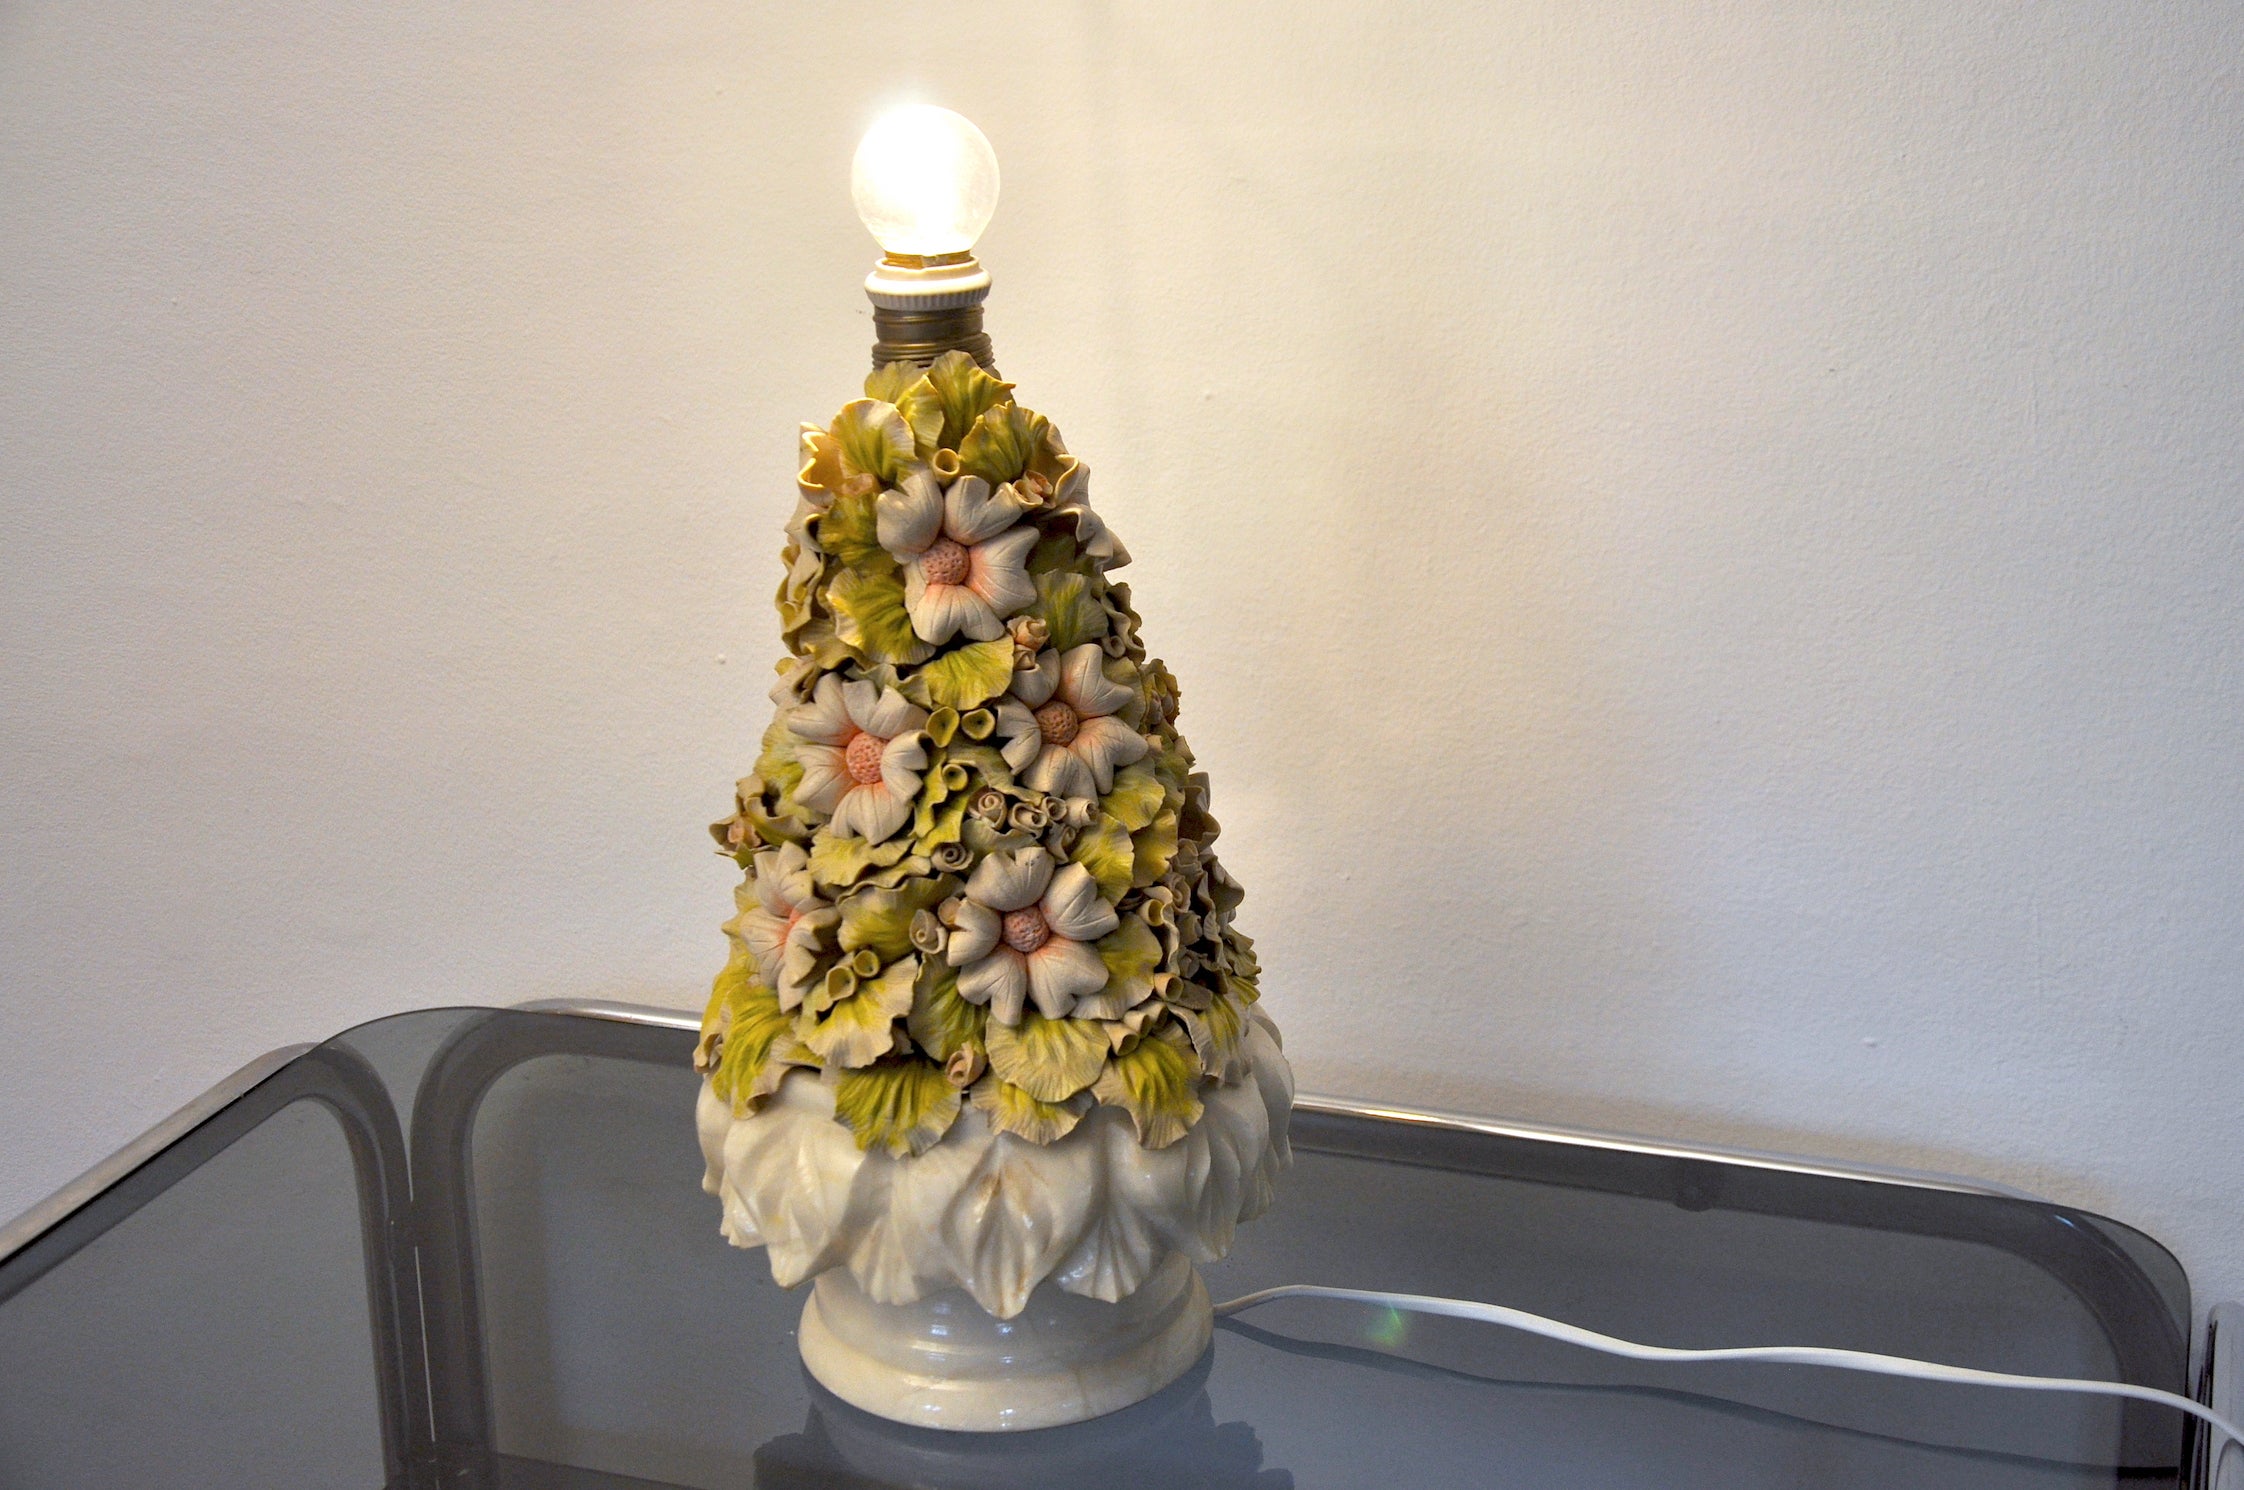 Sehr schöne handwerkliche Lampe aus den 1960er Jahren, hergestellt in Spanien von der Marke Manises. Sockel aus Alabaster, alle floralen Details wurden von Hand gefertigt und bemalt. Die Mängel sind auf den Fotos sichtbar, beeinträchtigen aber nicht